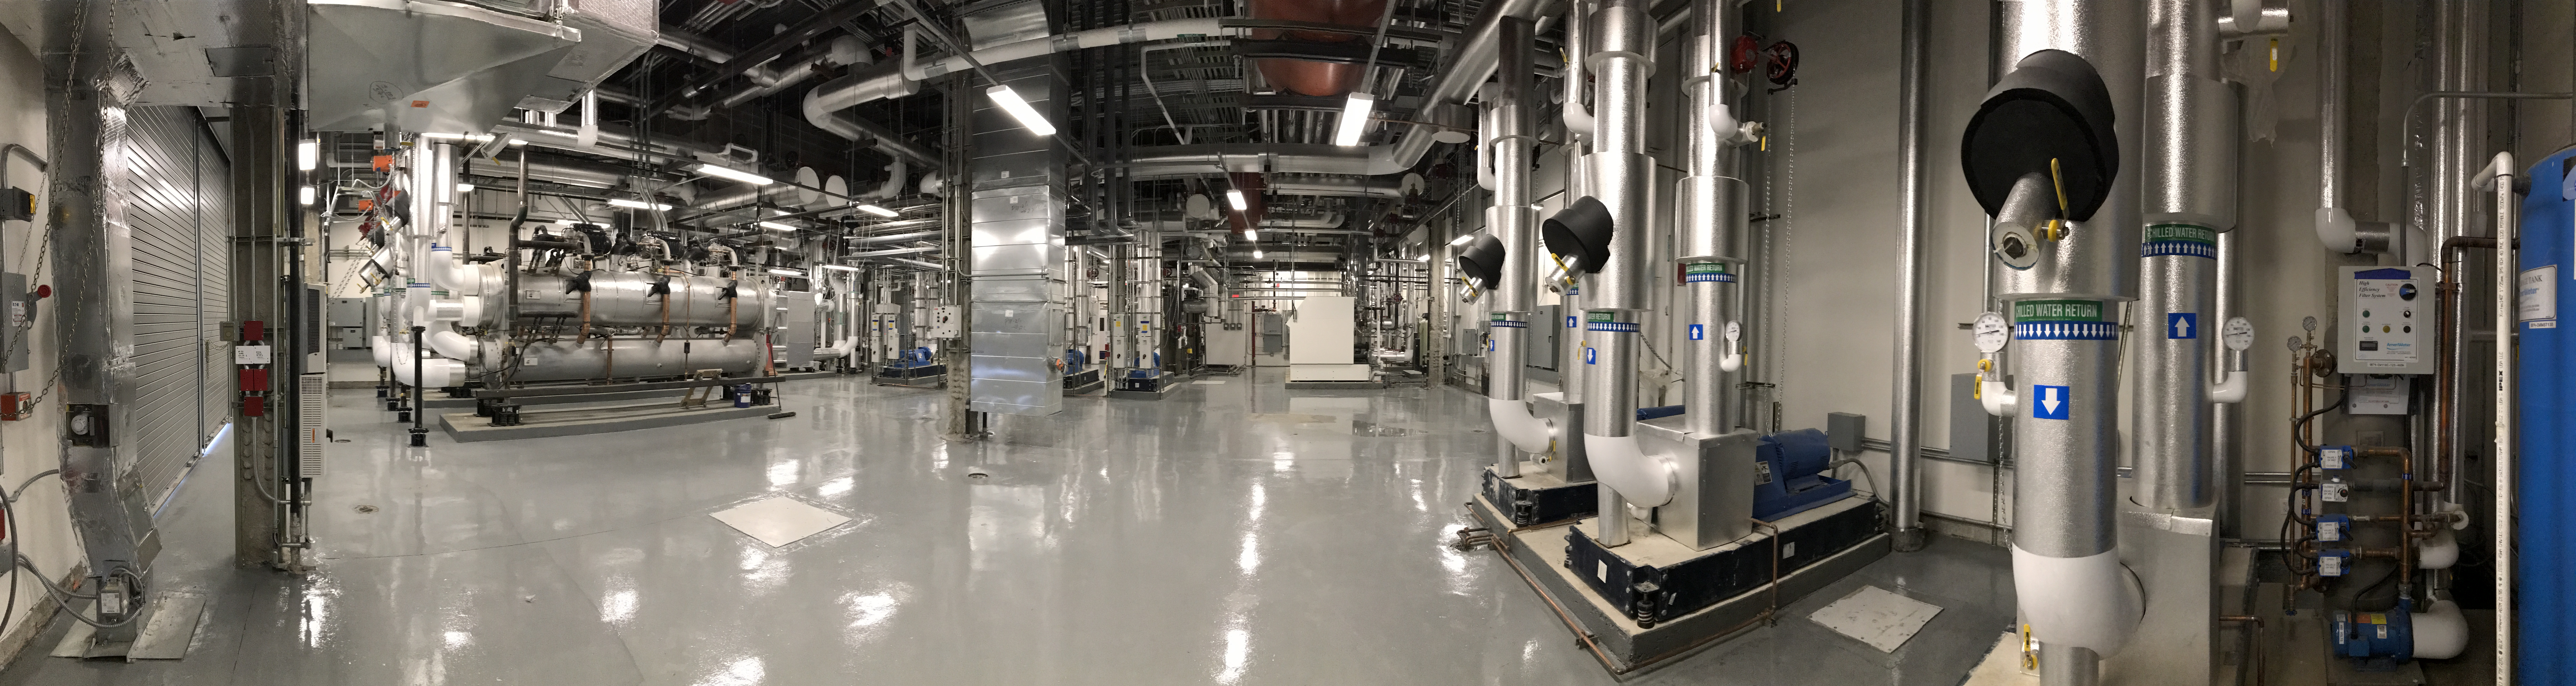 New York University New Physics Laboratory Facility (726 Broadway)